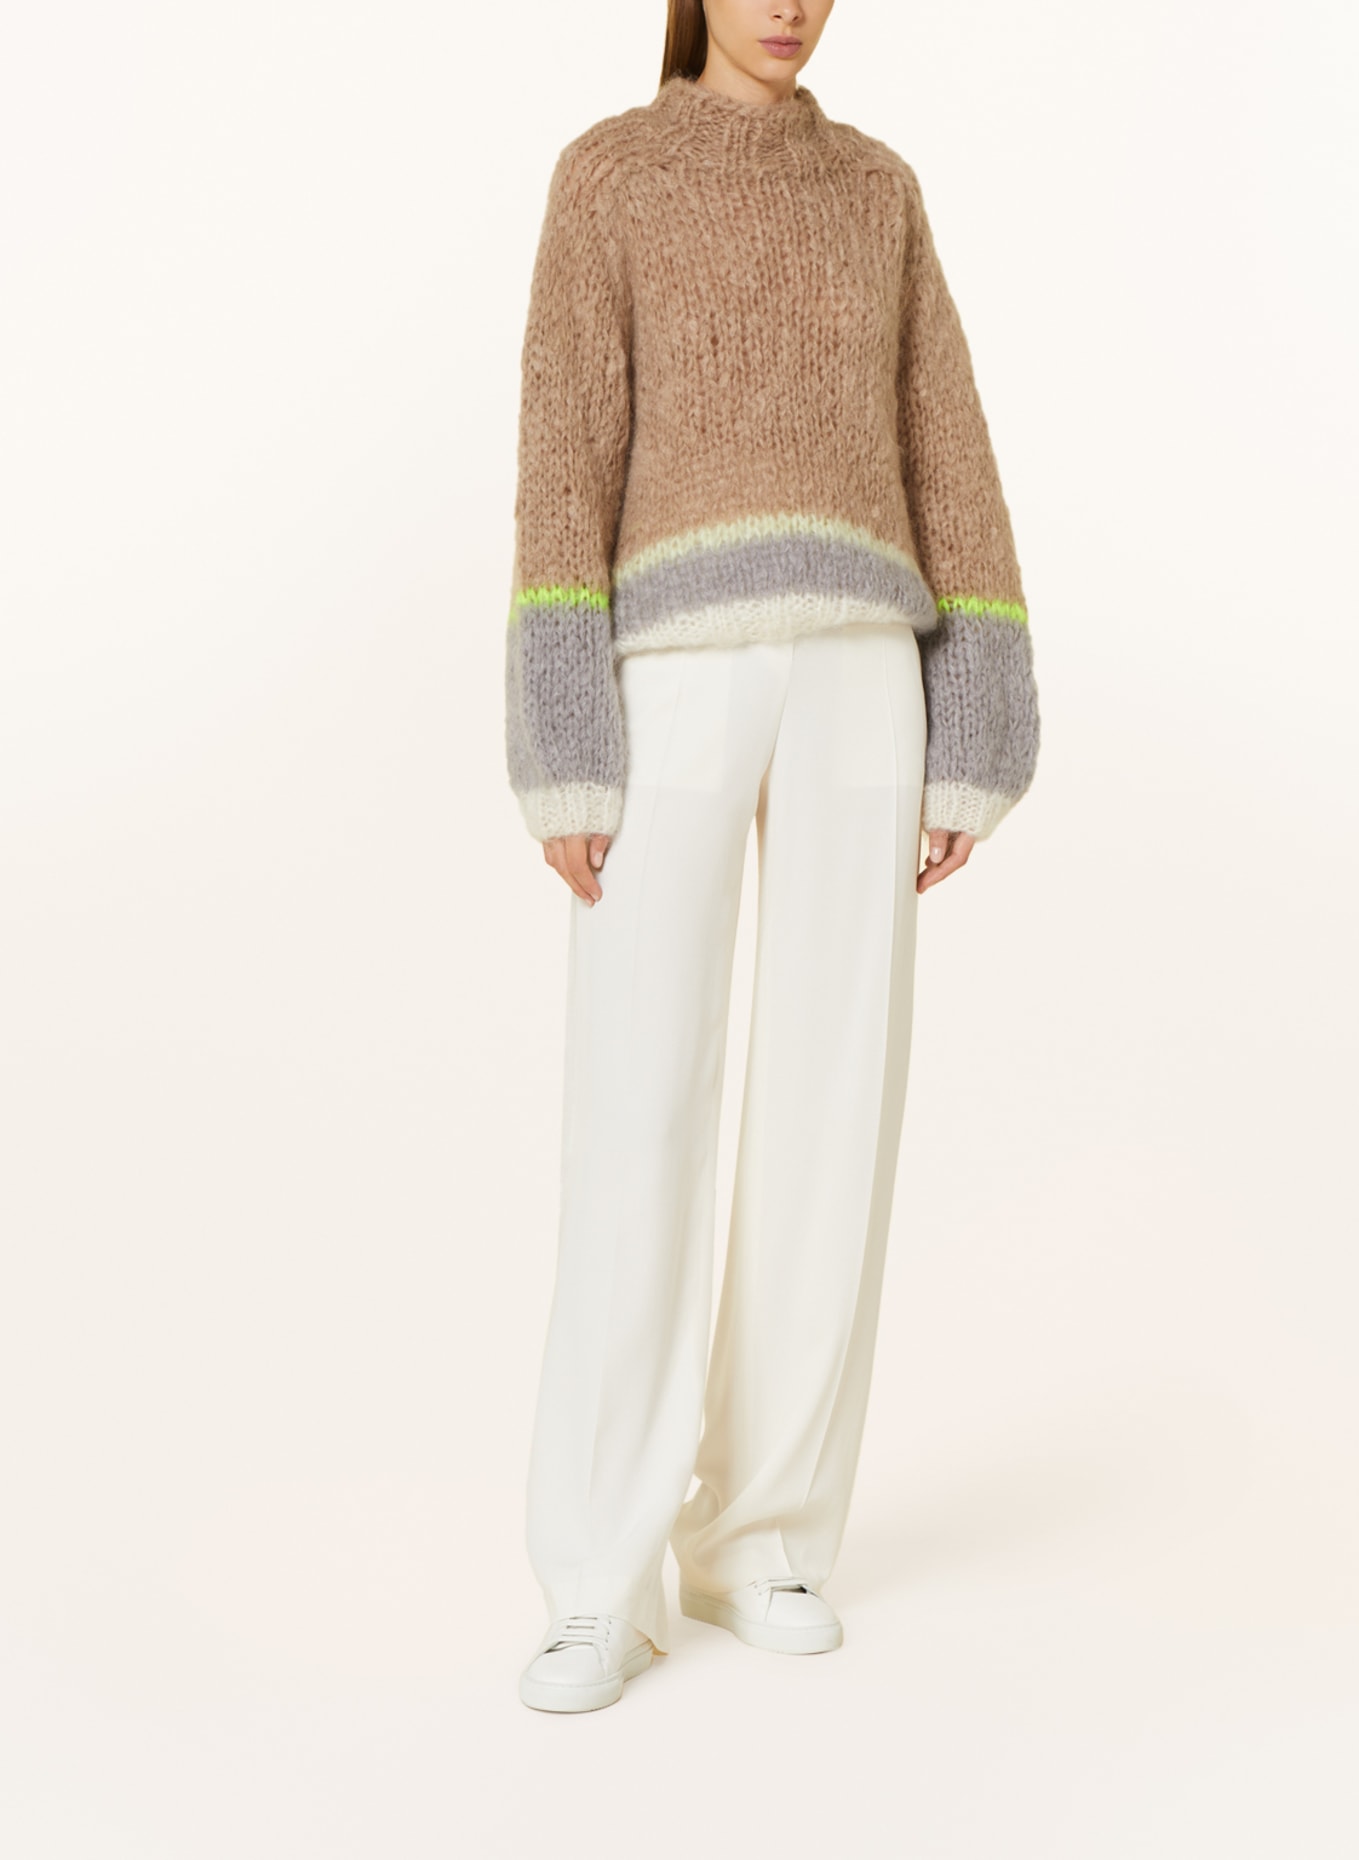 MAIAMI Mohair-Pullover, Farbe: BEIGE/ GRAU (Bild 2)